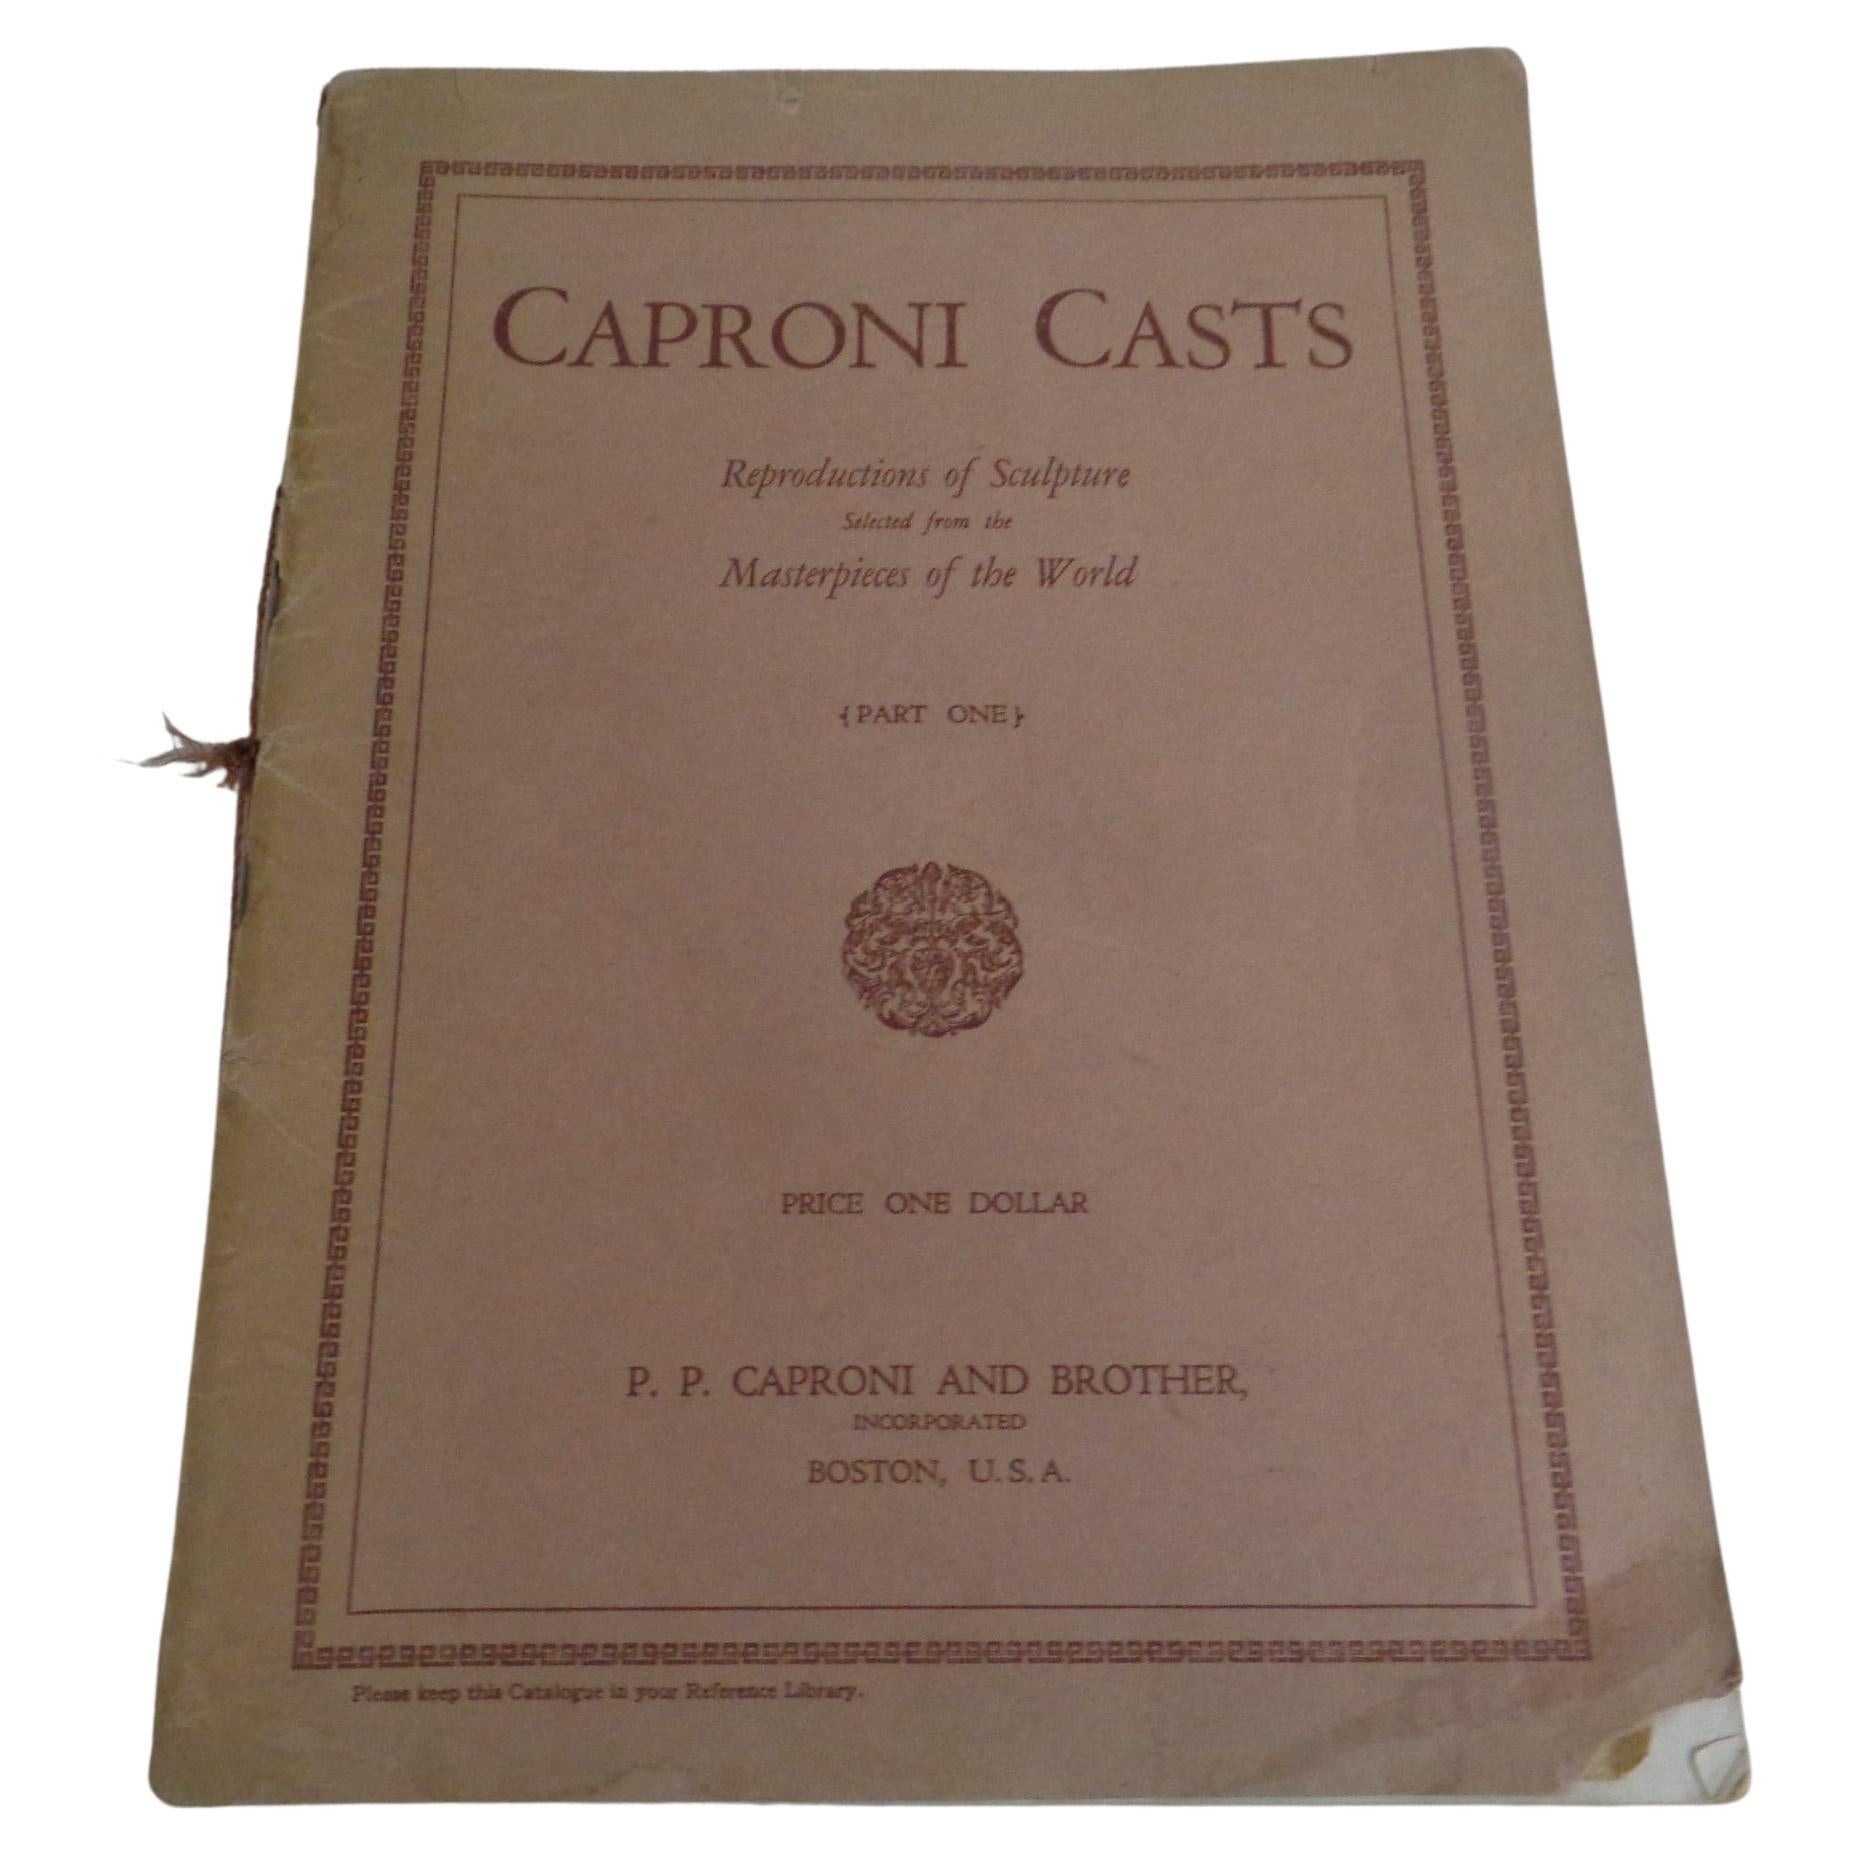 Caproni Casts : Chefs-d'œuvre de la sculpture - Catalogue 1932 Caproni Brothers  en vente